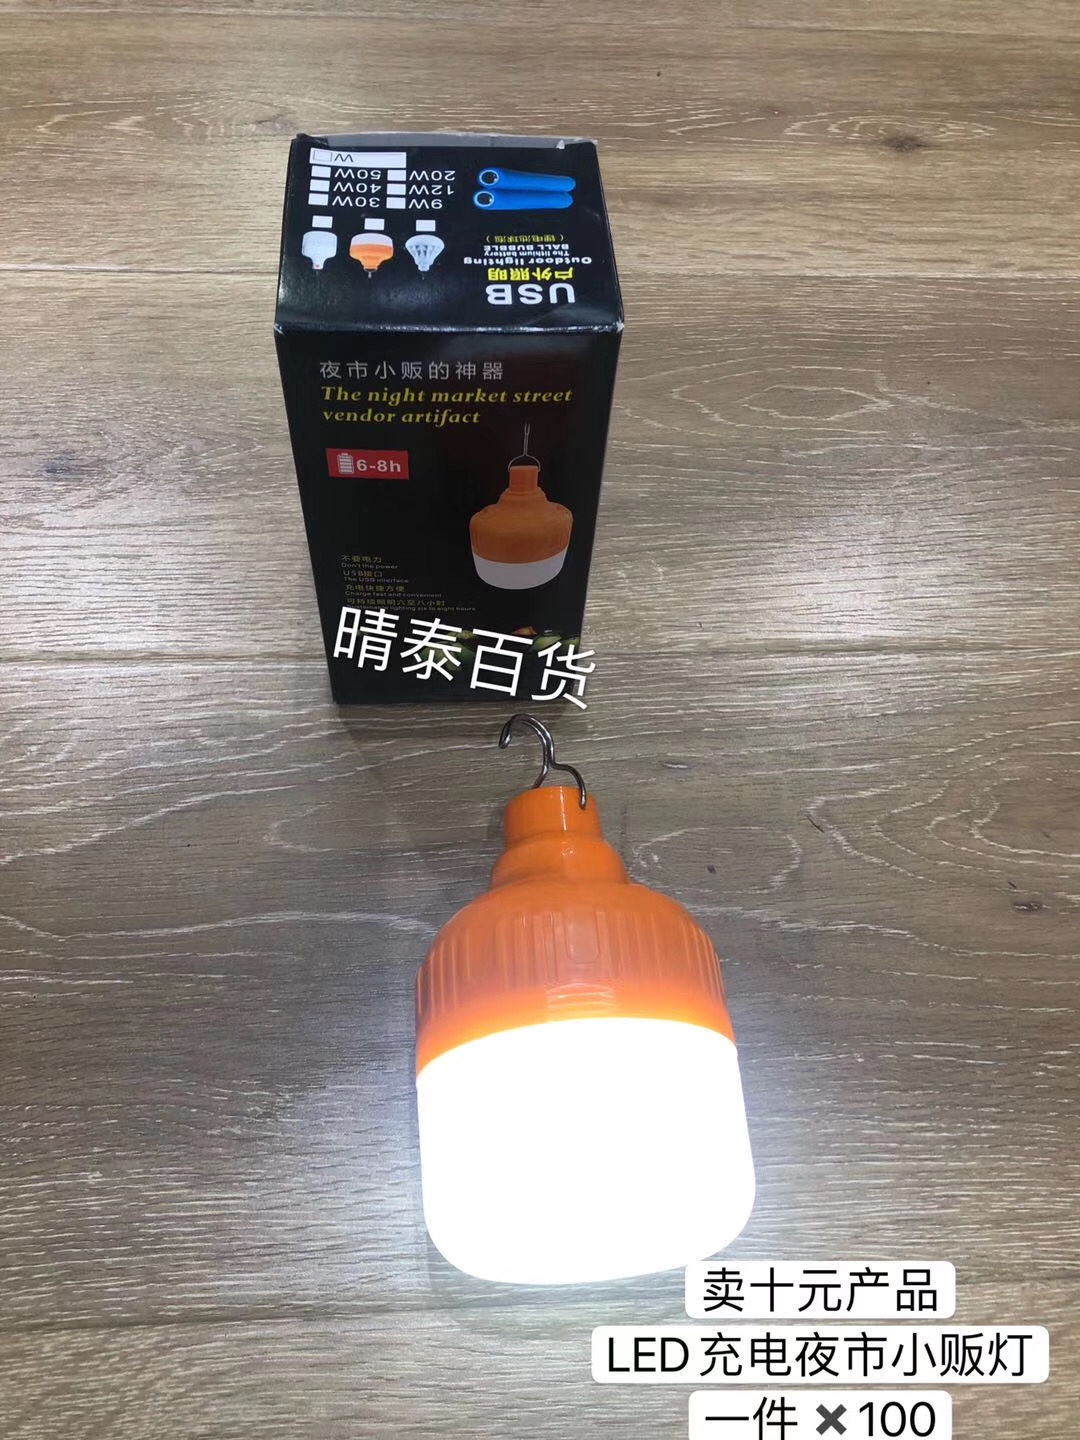 卖十元产品
LED充电夜市小贩灯
一件✖️100产品图